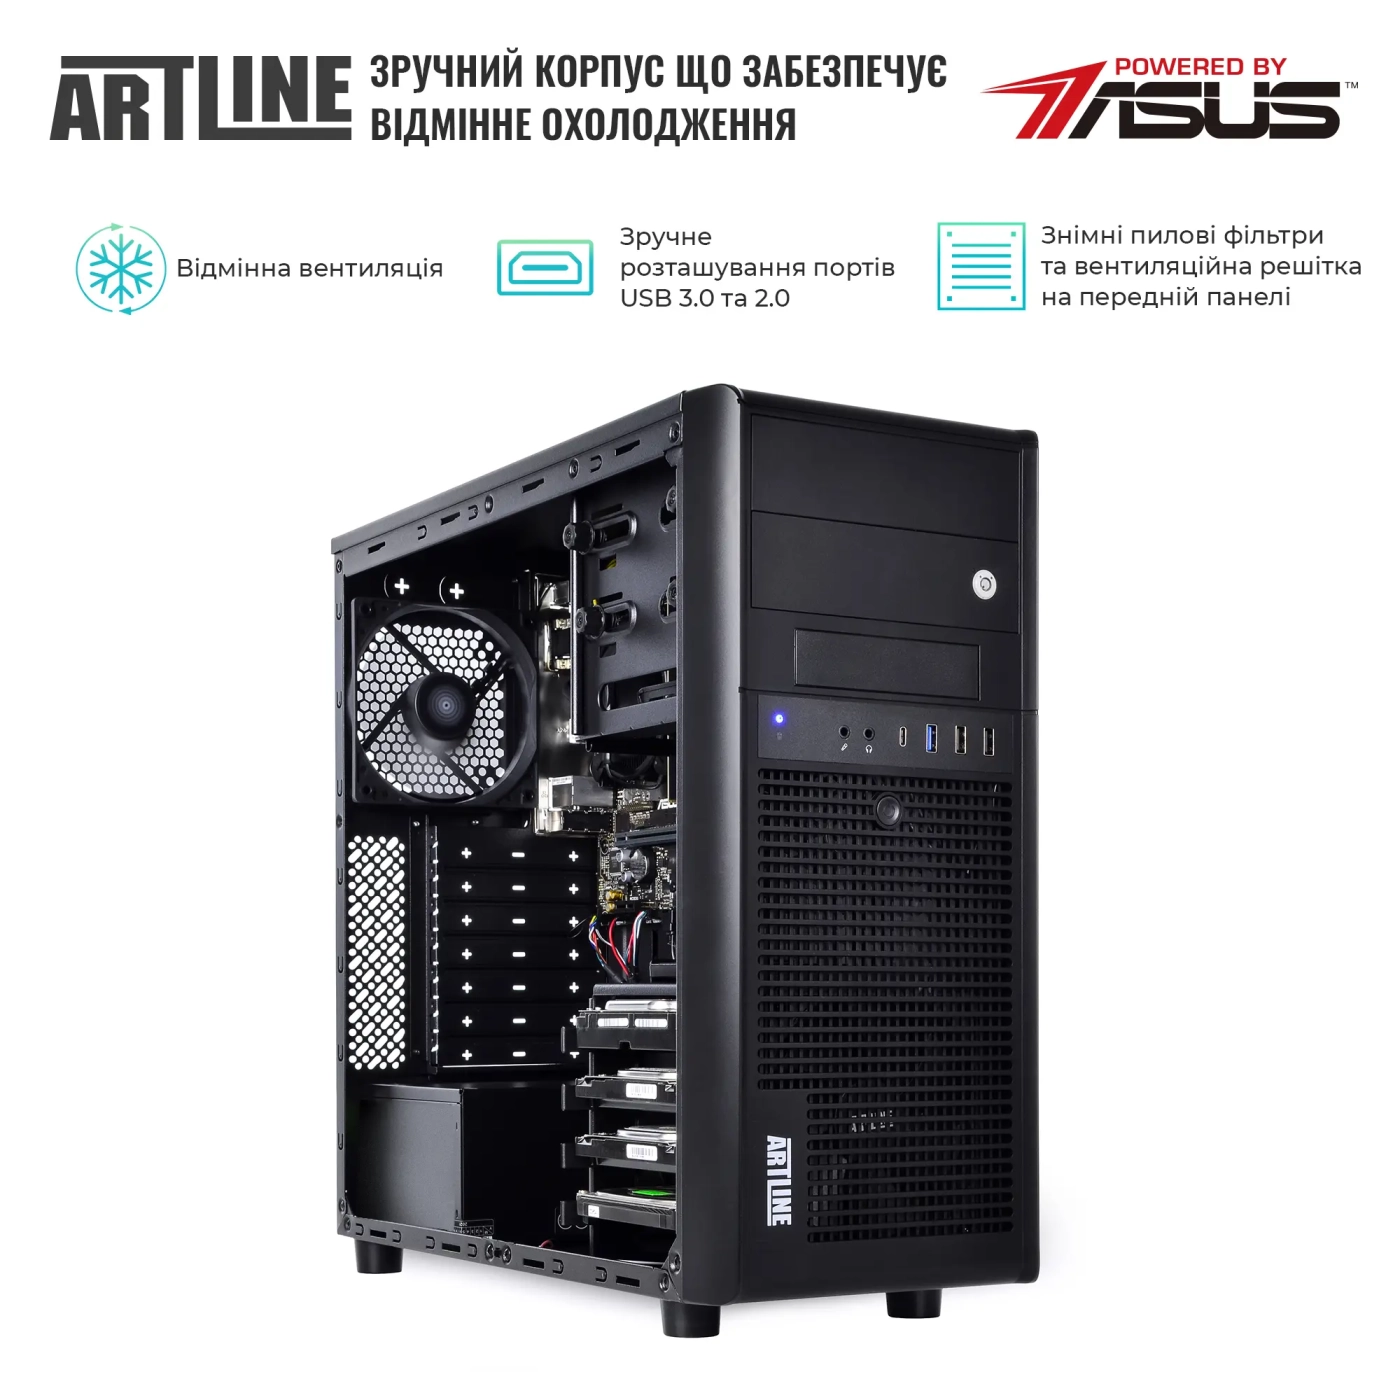 Купить Сервер ARTLINE Business T37v16 - фото 3